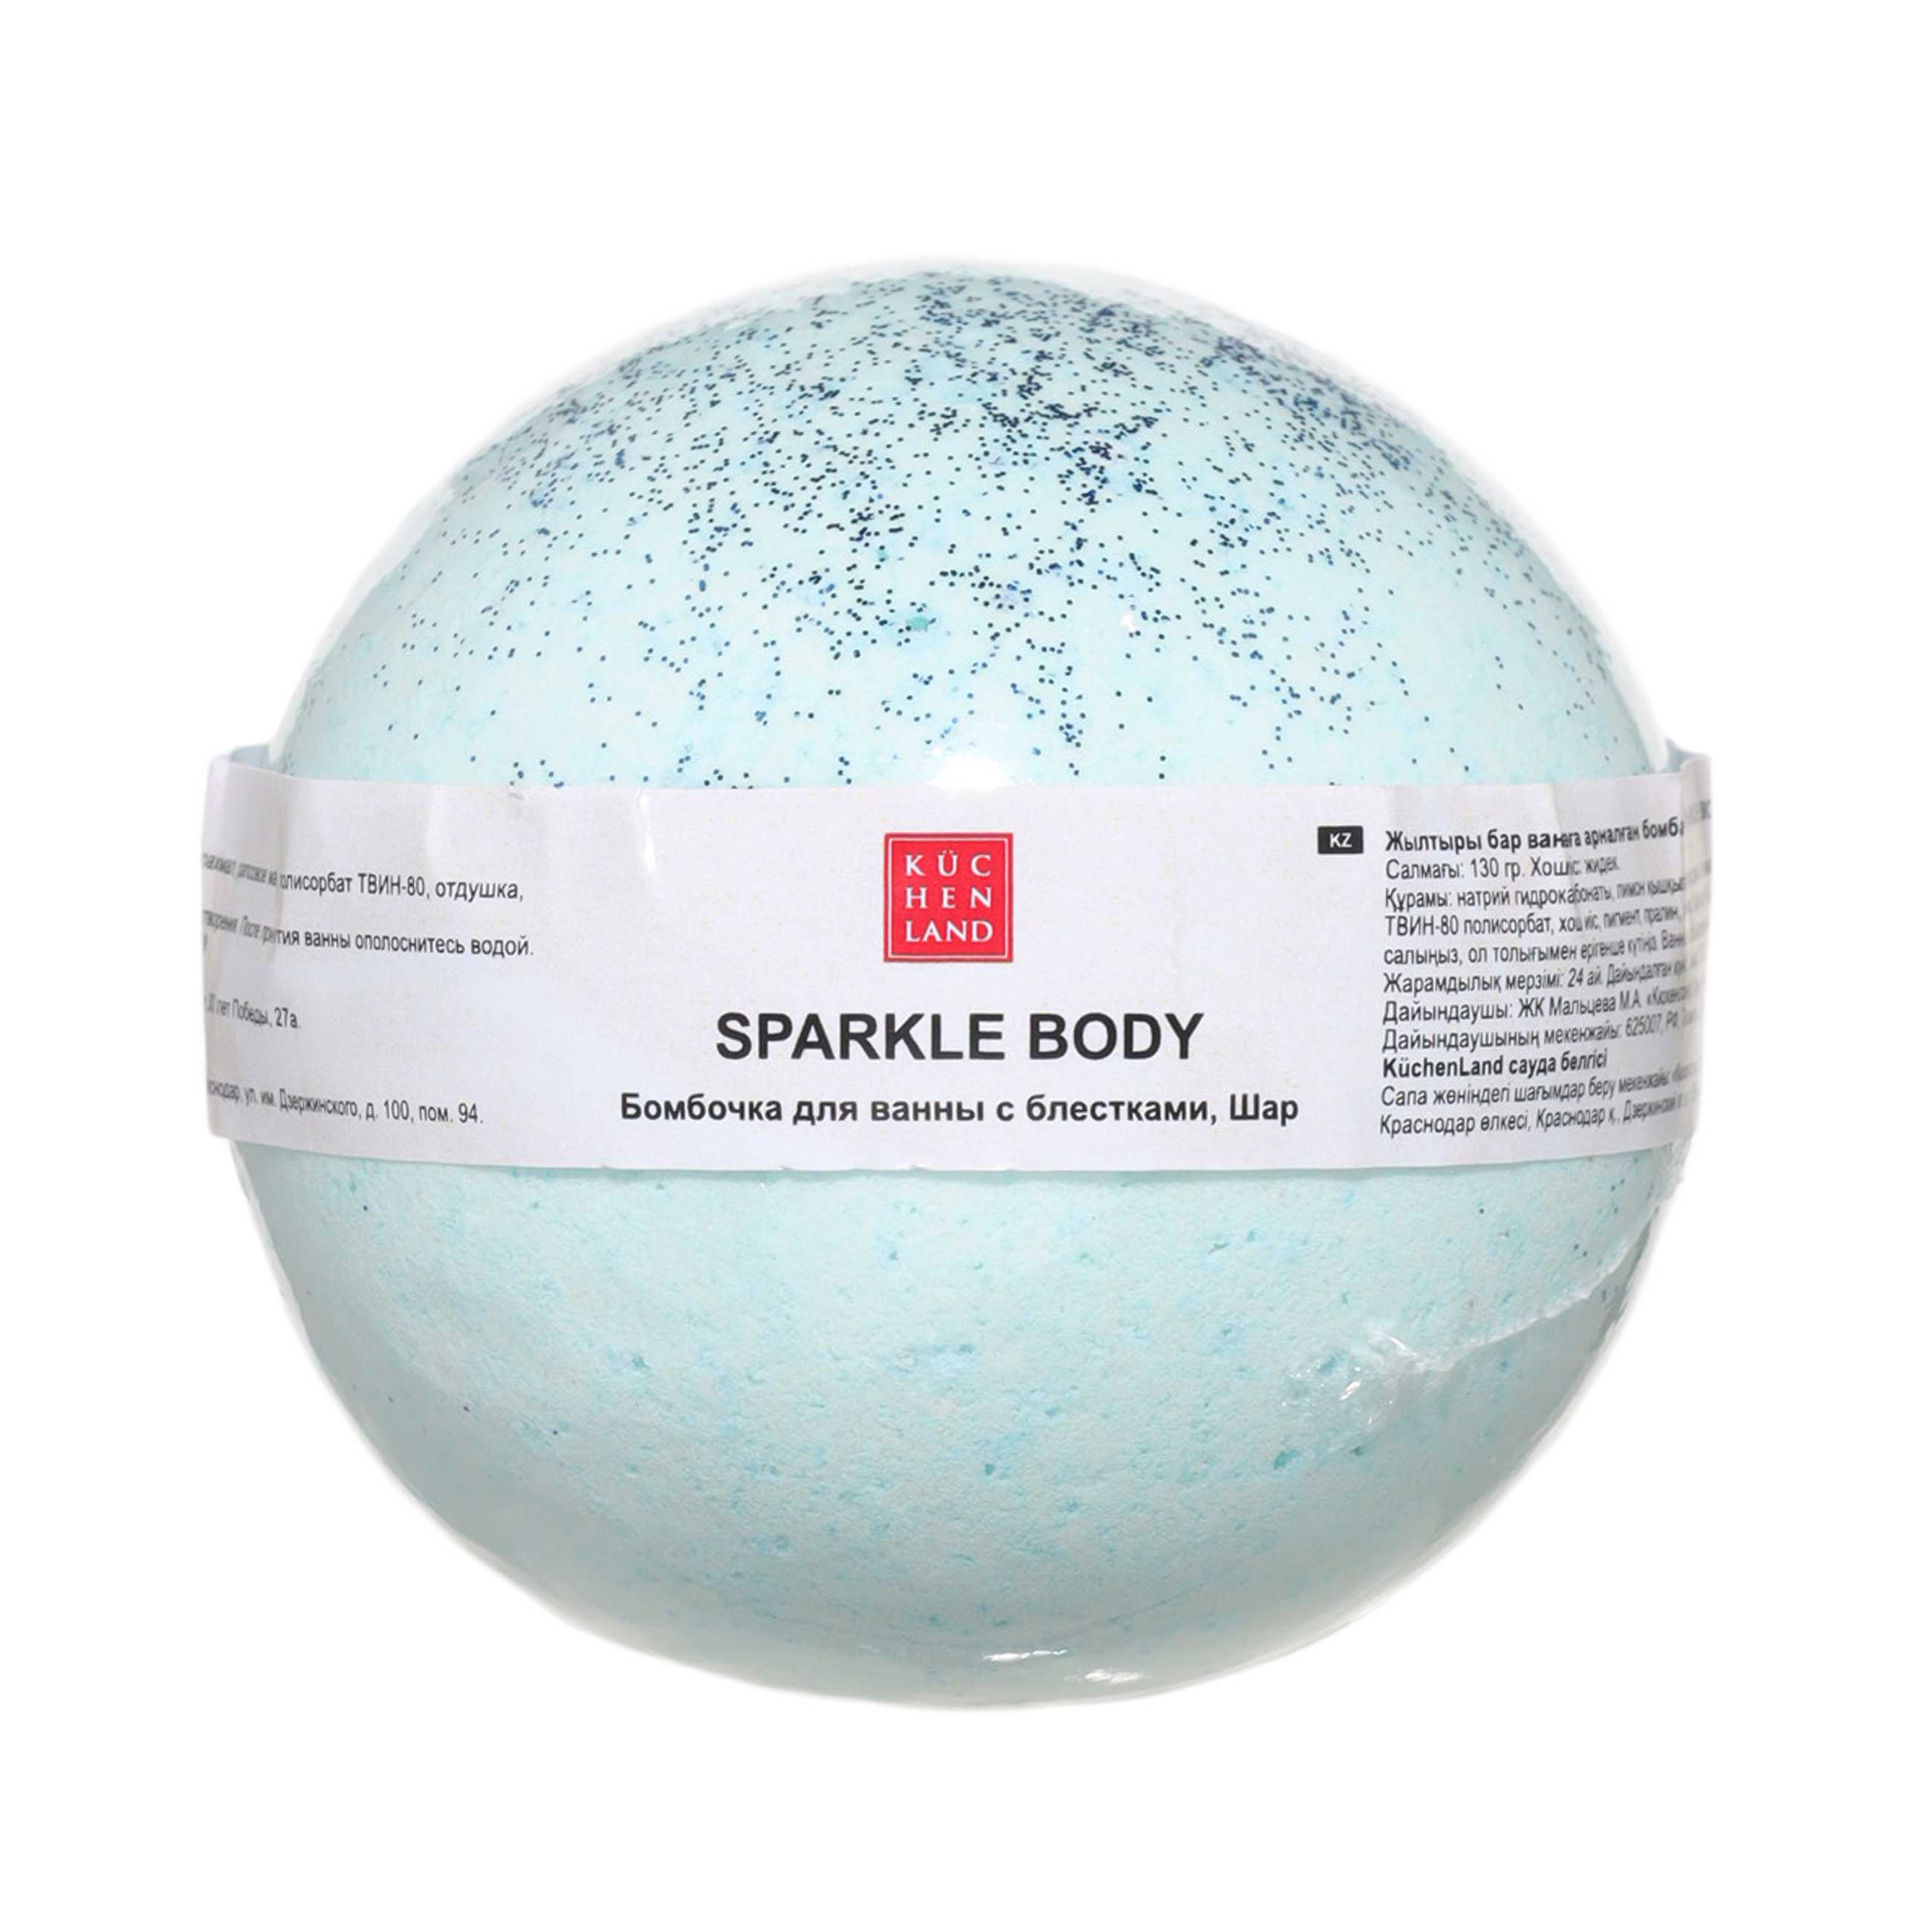 Бомбочка для ванны, 130 гр, с блестками, Ягодный аромат, голубая, Шар, Sparkle body изображение № 2